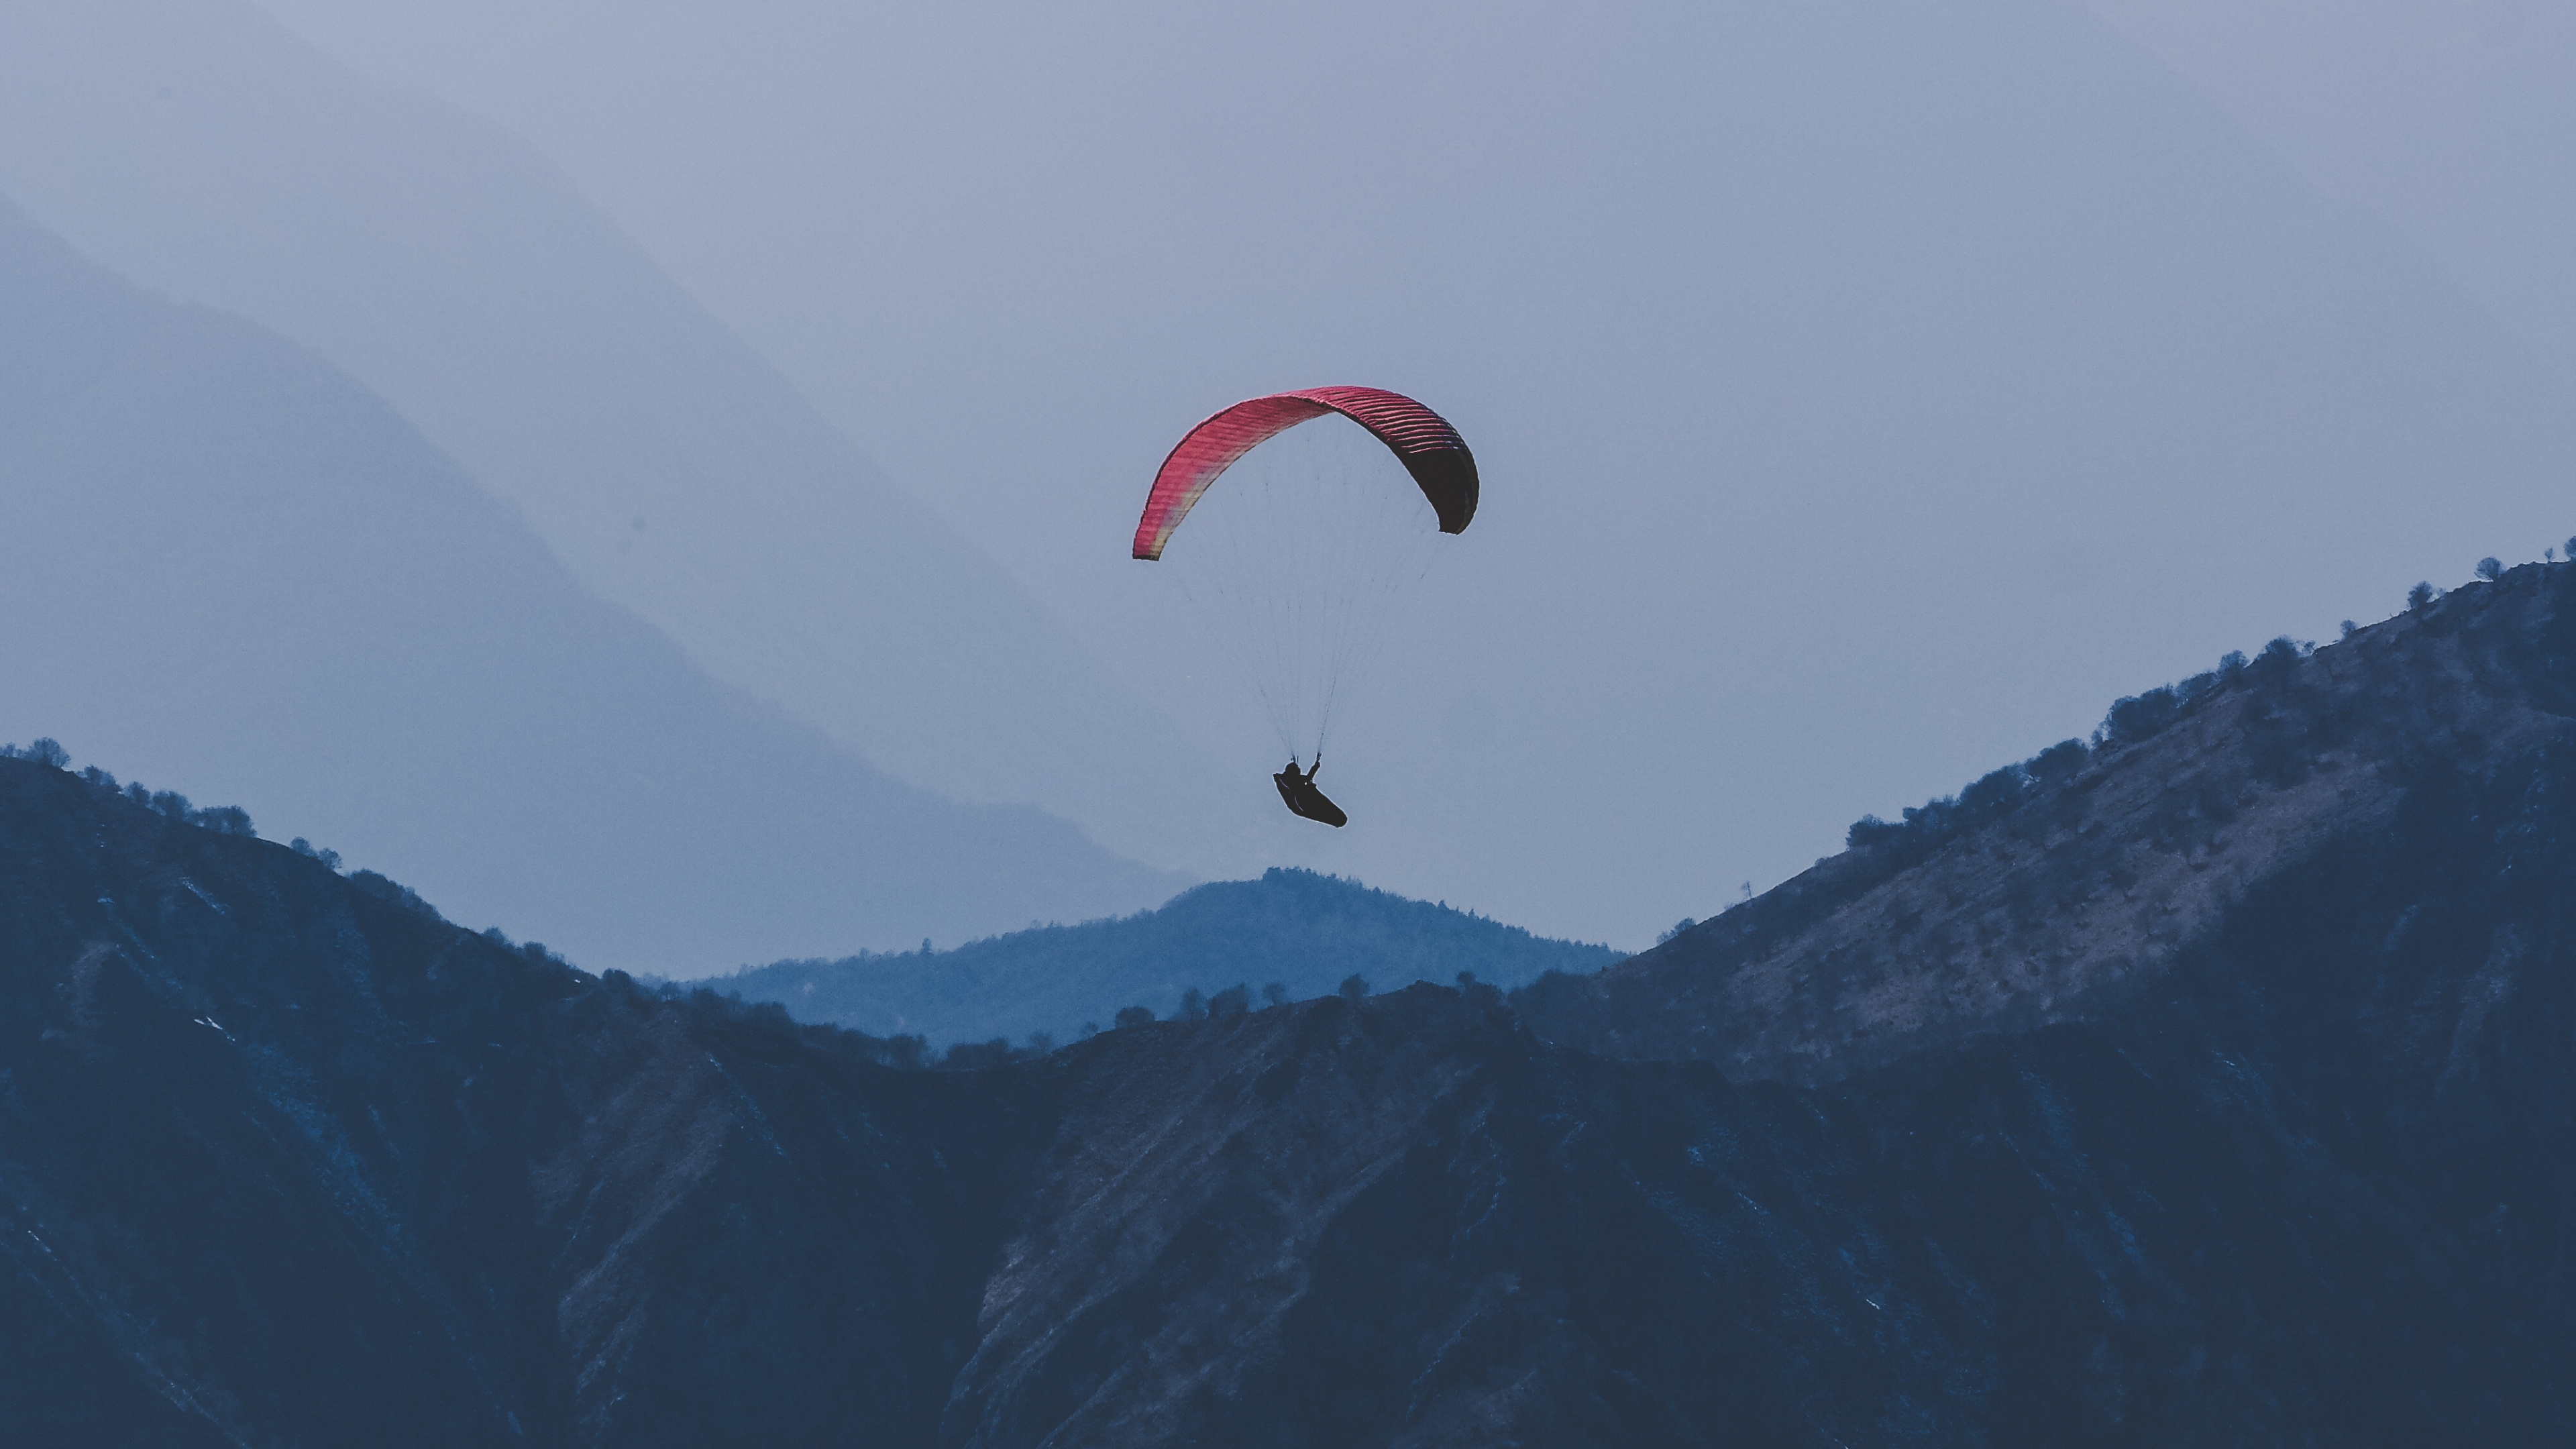 降落伞, 空中运动, Windsports, 极限运动, 地形 壁纸 3840x2160 允许